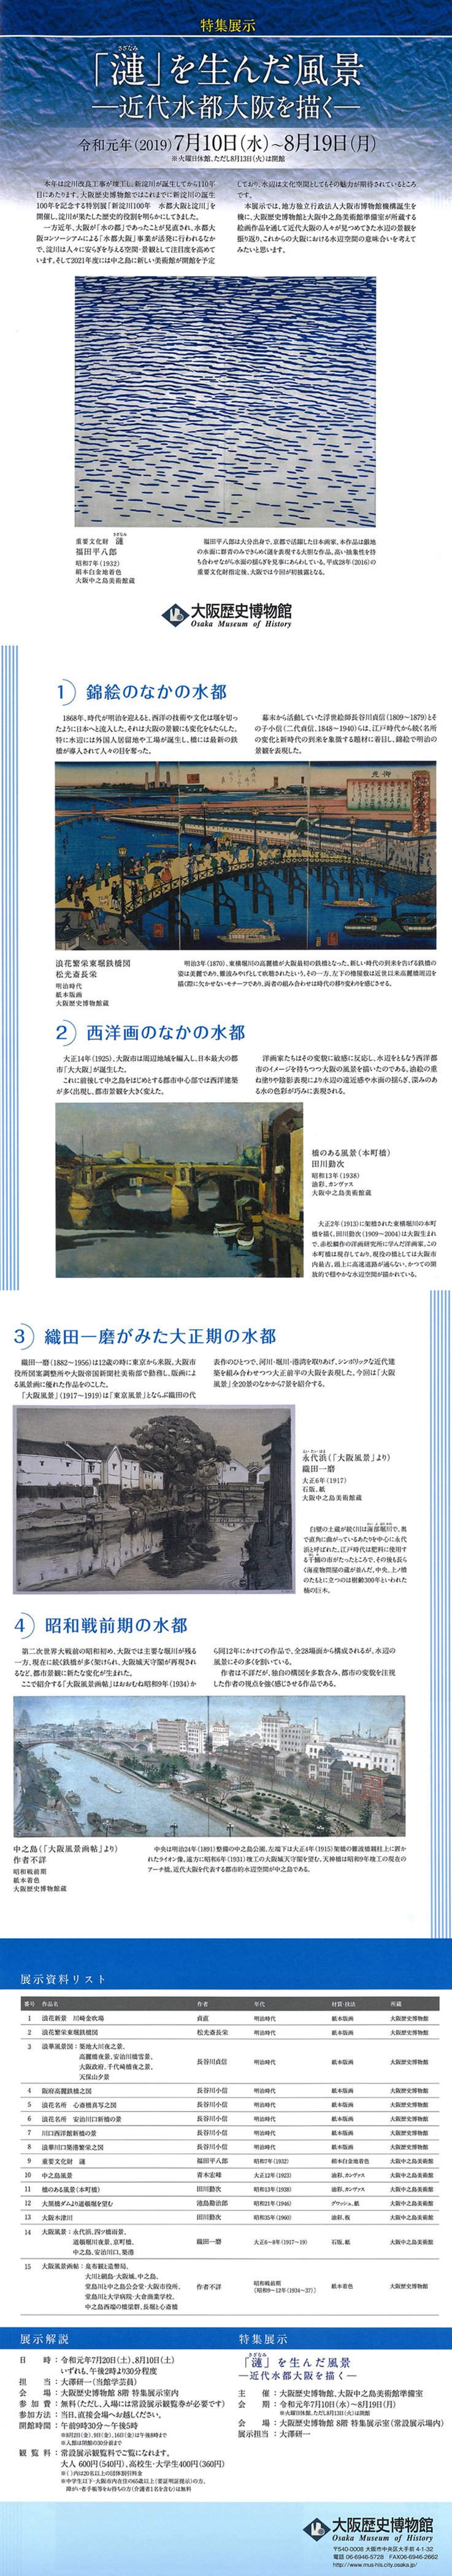 特集展示『「漣（さざなみ）」を生んだ風景ー近代水都大阪を描くー」